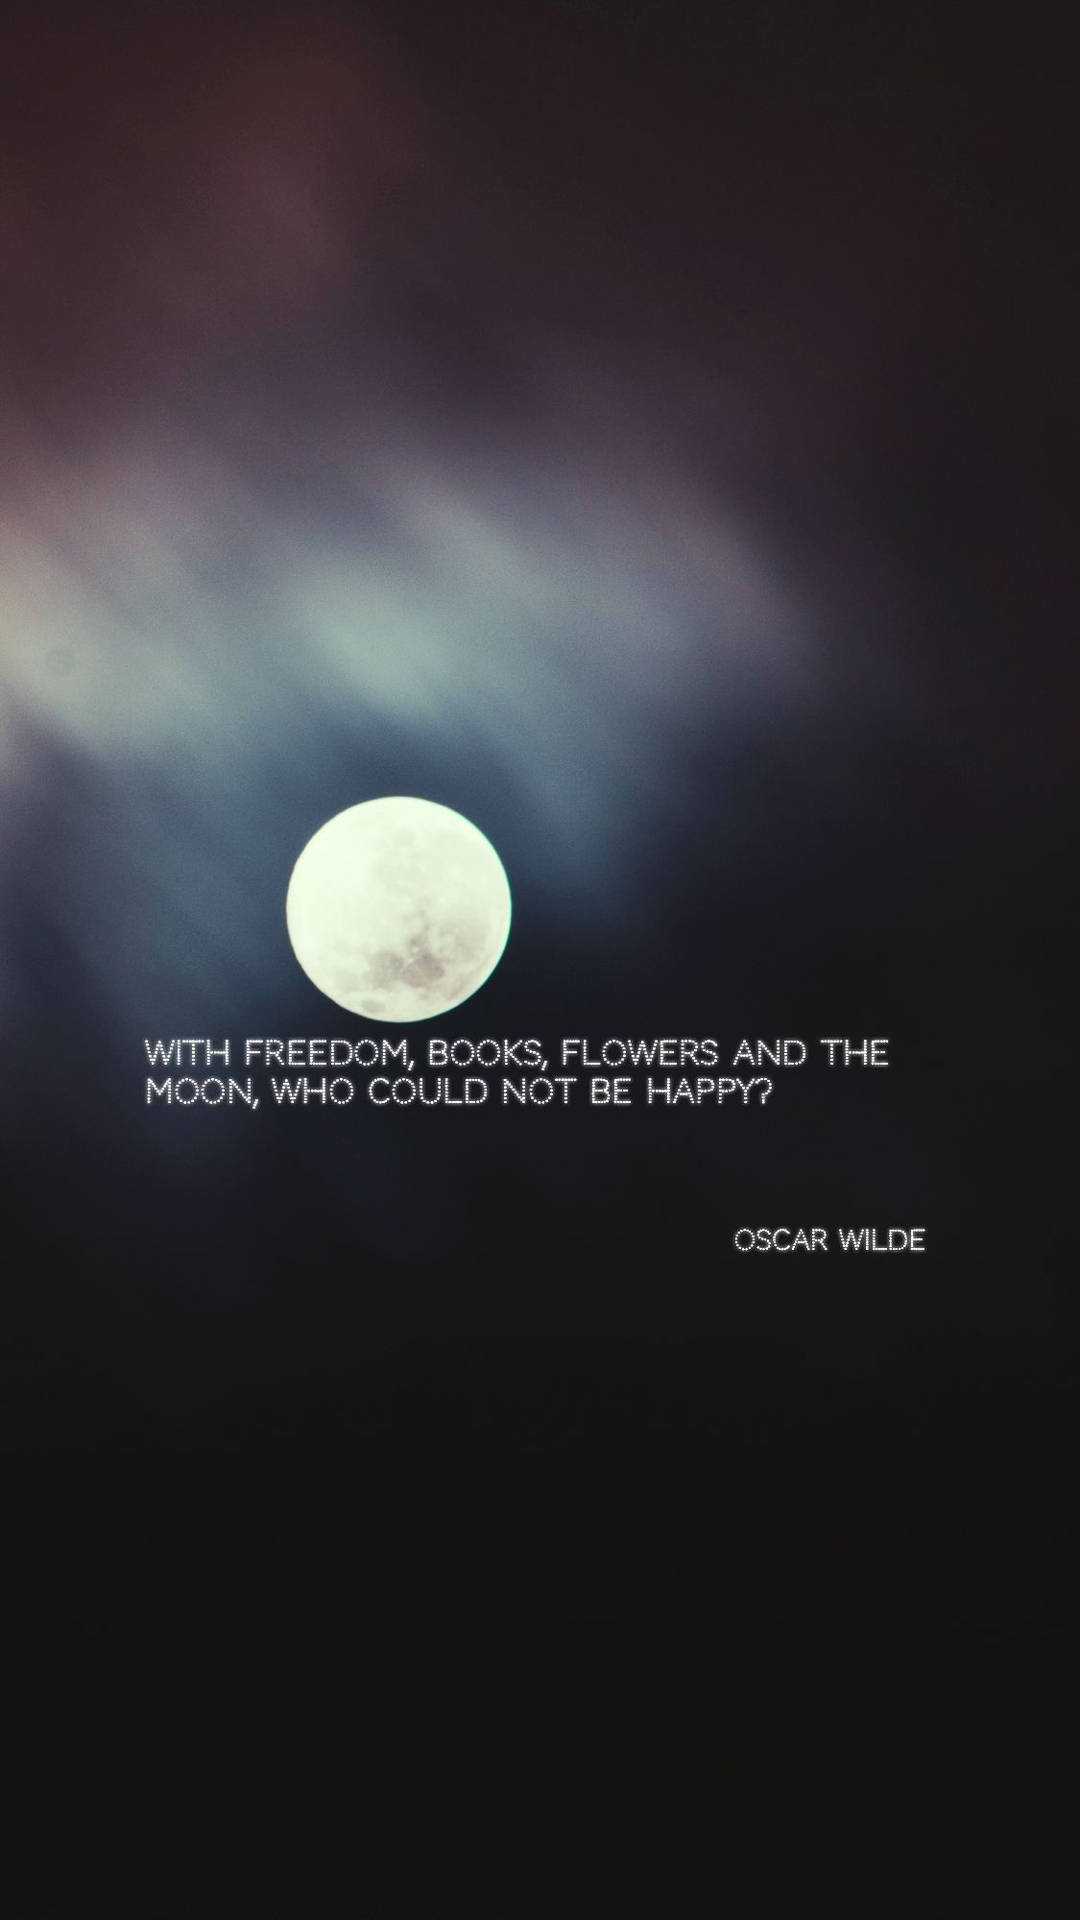 Månadenscitat Från Oscar Wilde. Wallpaper